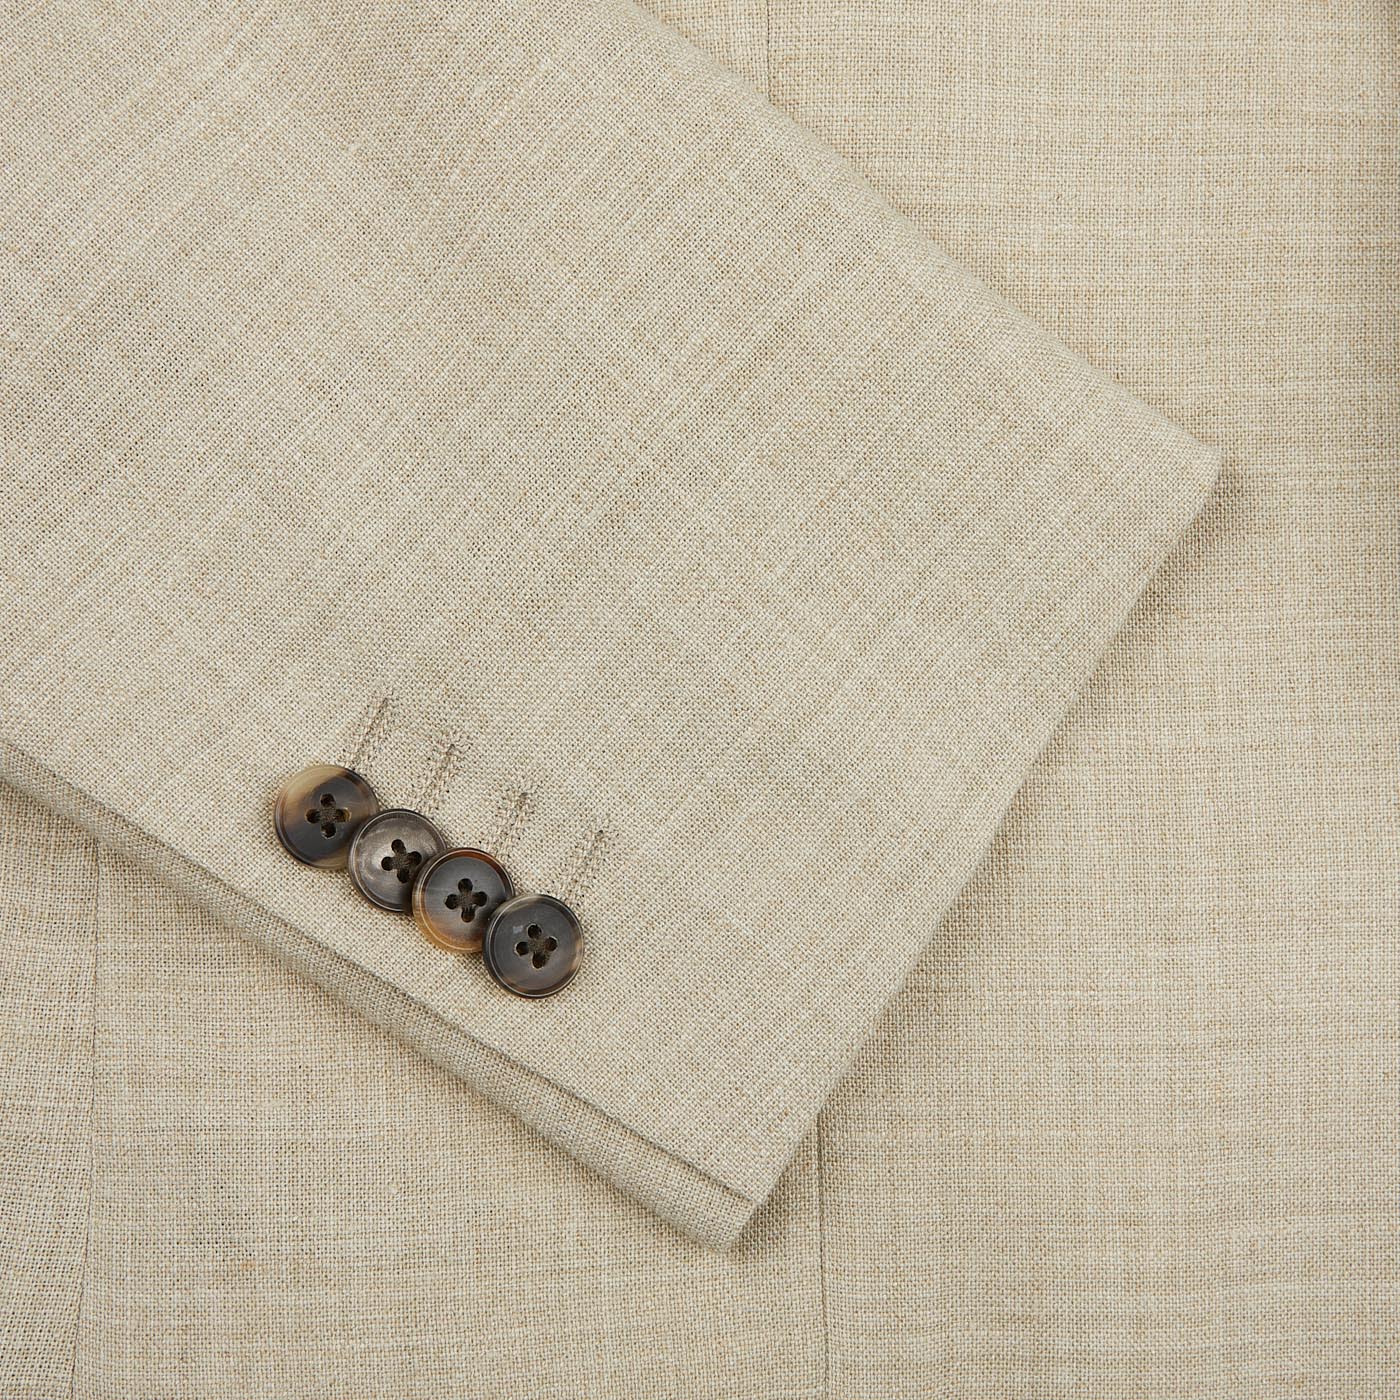 A close up of a button on a Baltzar Sartorial Beige Melange Wool Linen Suit Jacket.